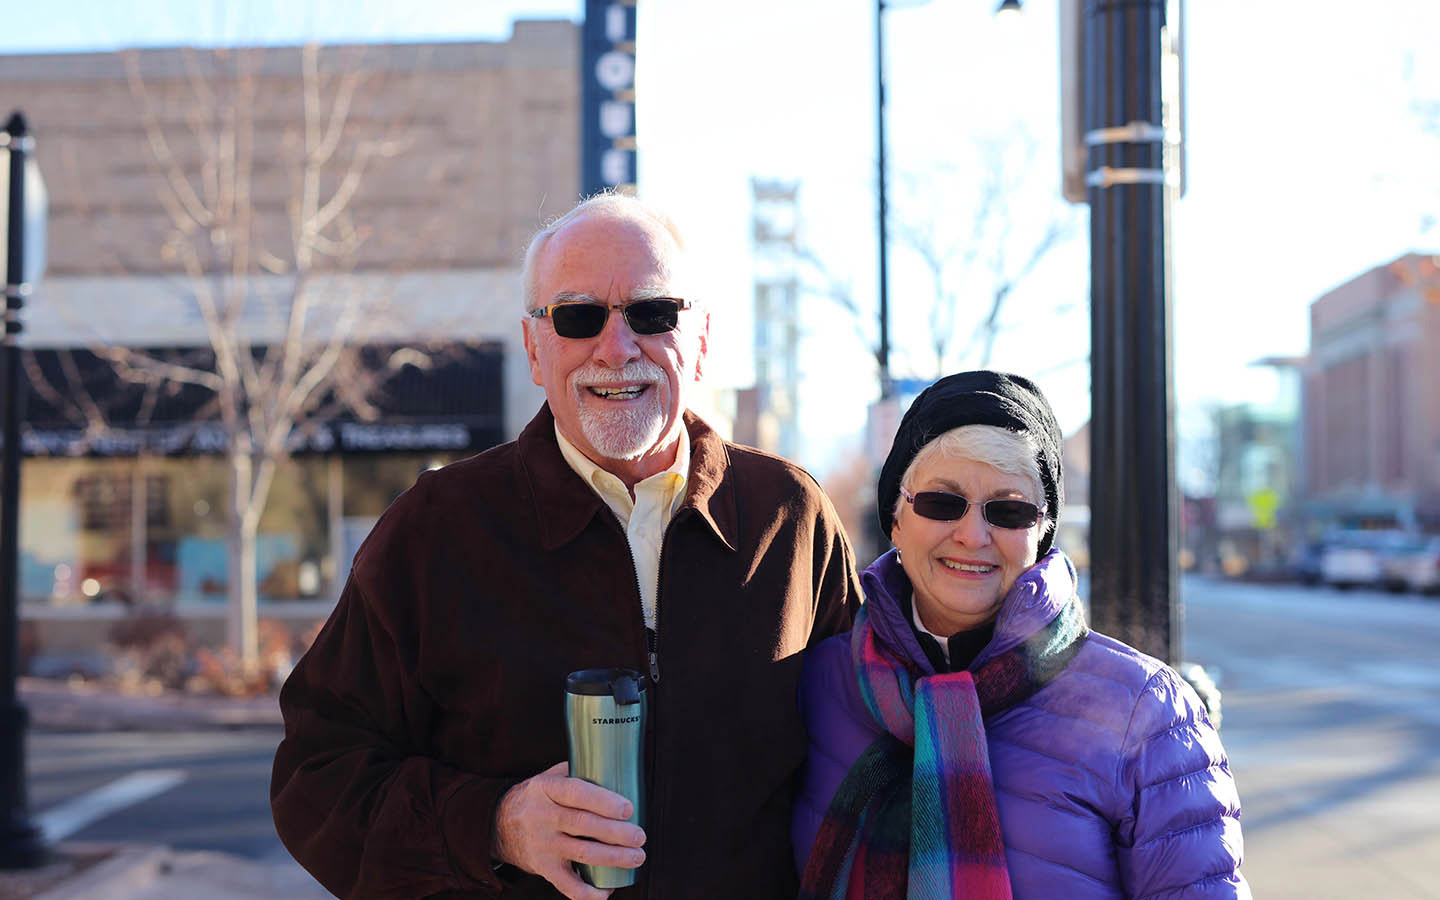 Cochlear-gebruiker Tom en zijn vrouw Brenda poseren op straat voor een foto